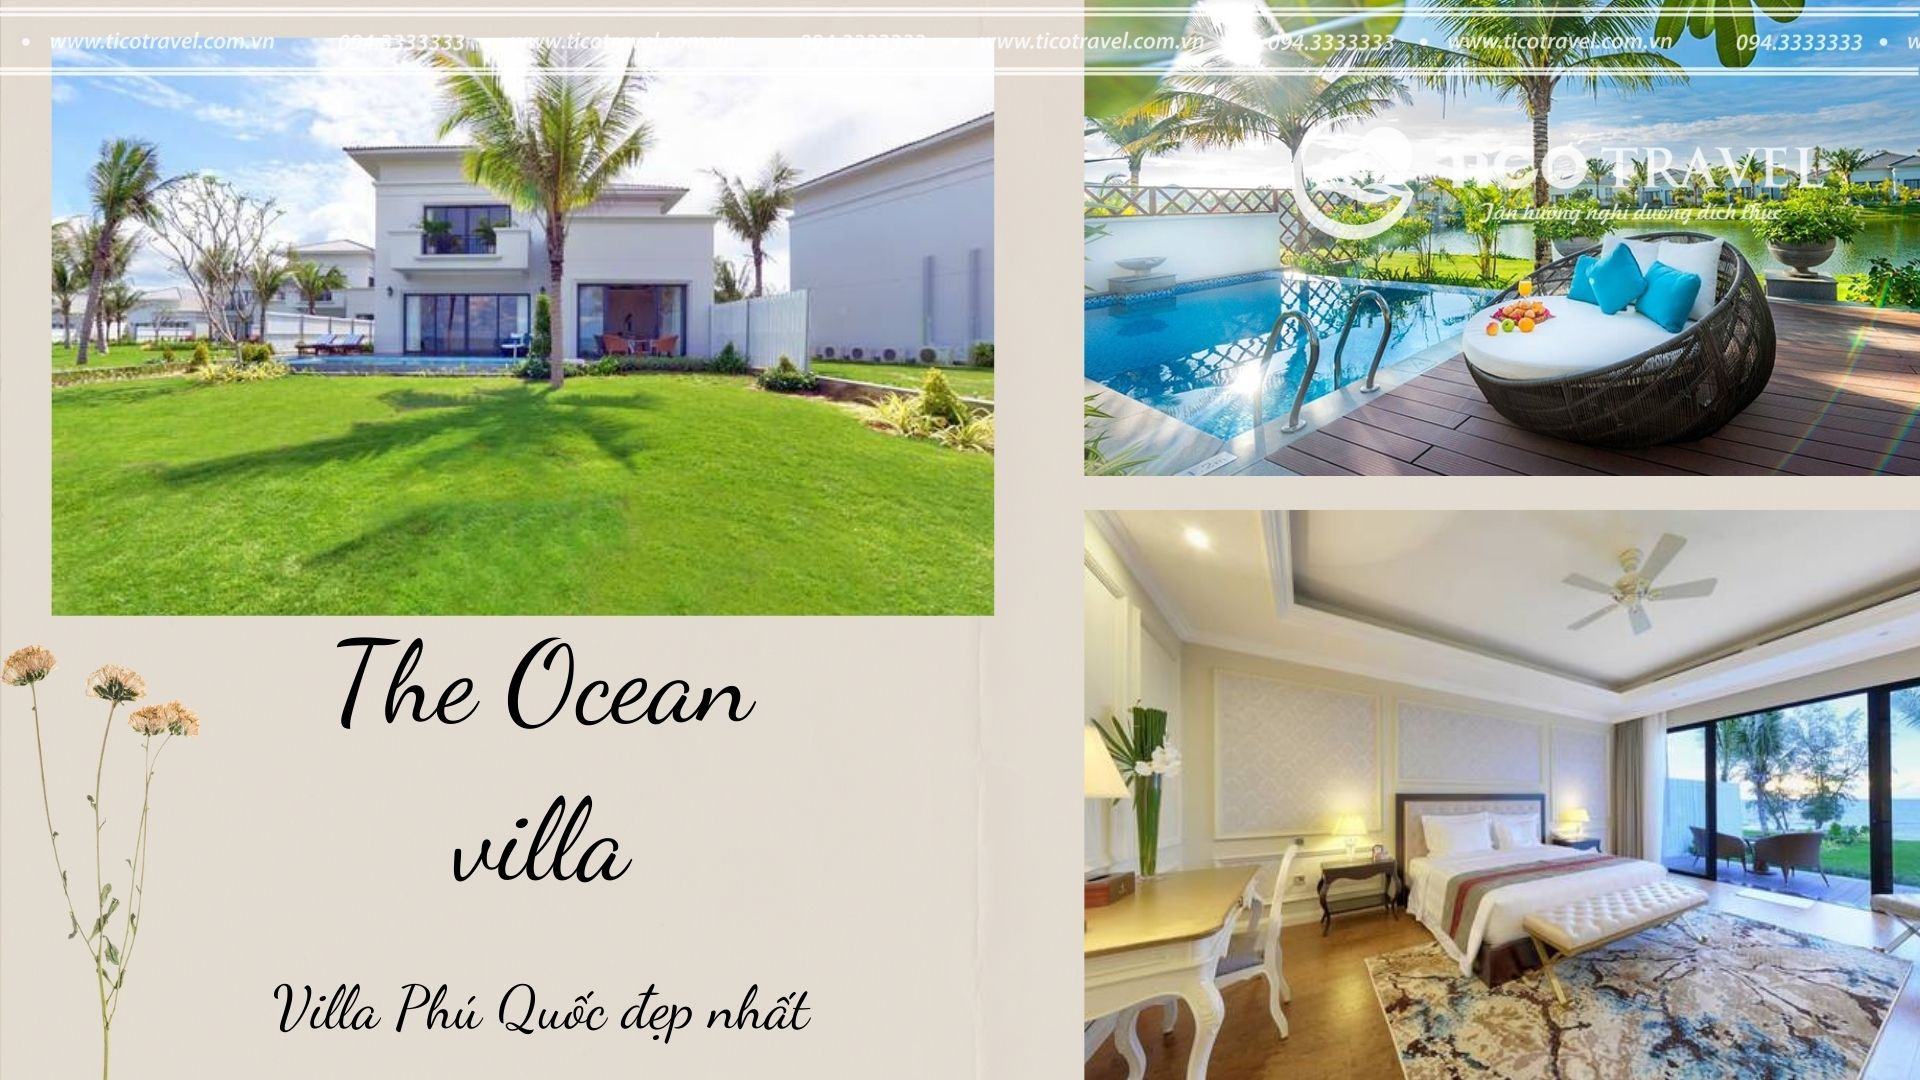 Vinpearl Villa Phú Quốc - The Ocean villa